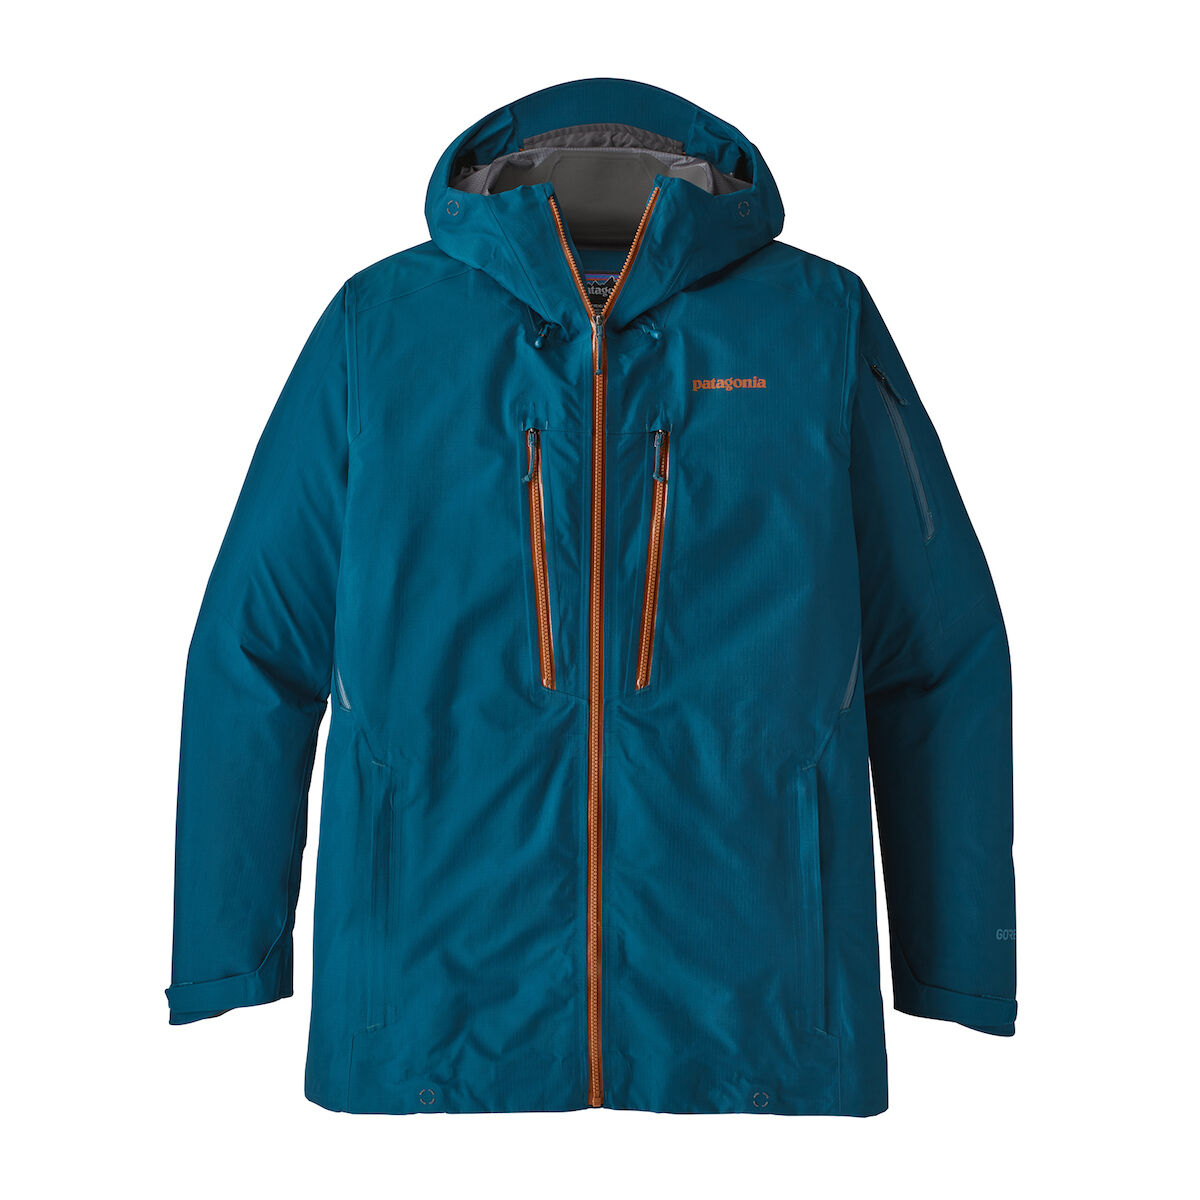 Patagonia - PowSlayer Jkt - Ski jacket - Men's